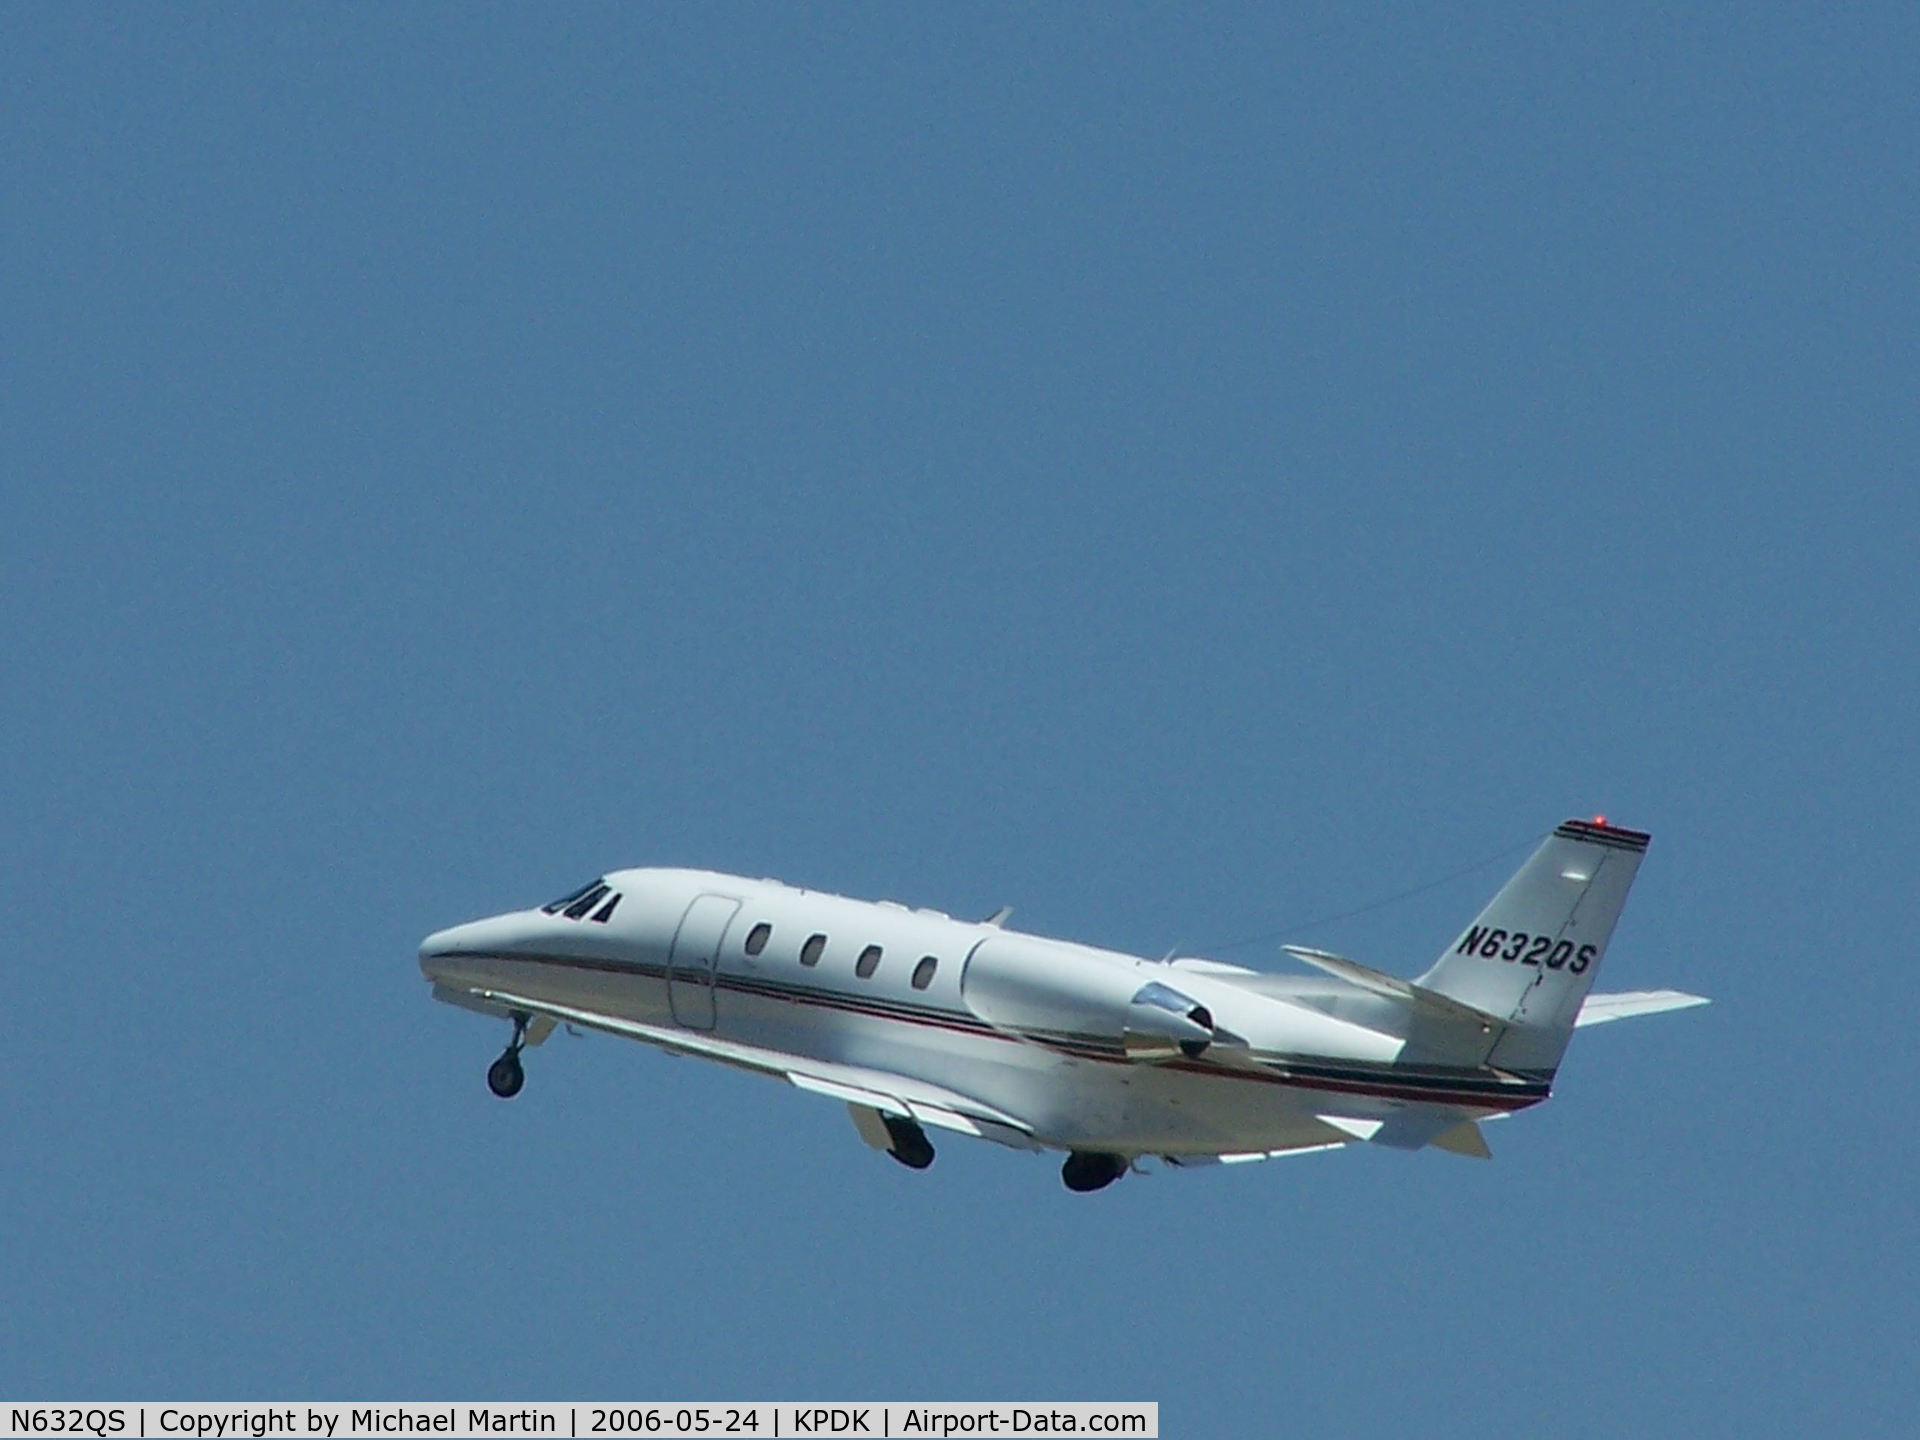 N632QS, 2000 Cessna 560 Citation Excel C/N 560-5132, Departing PDK enroute to KBKV